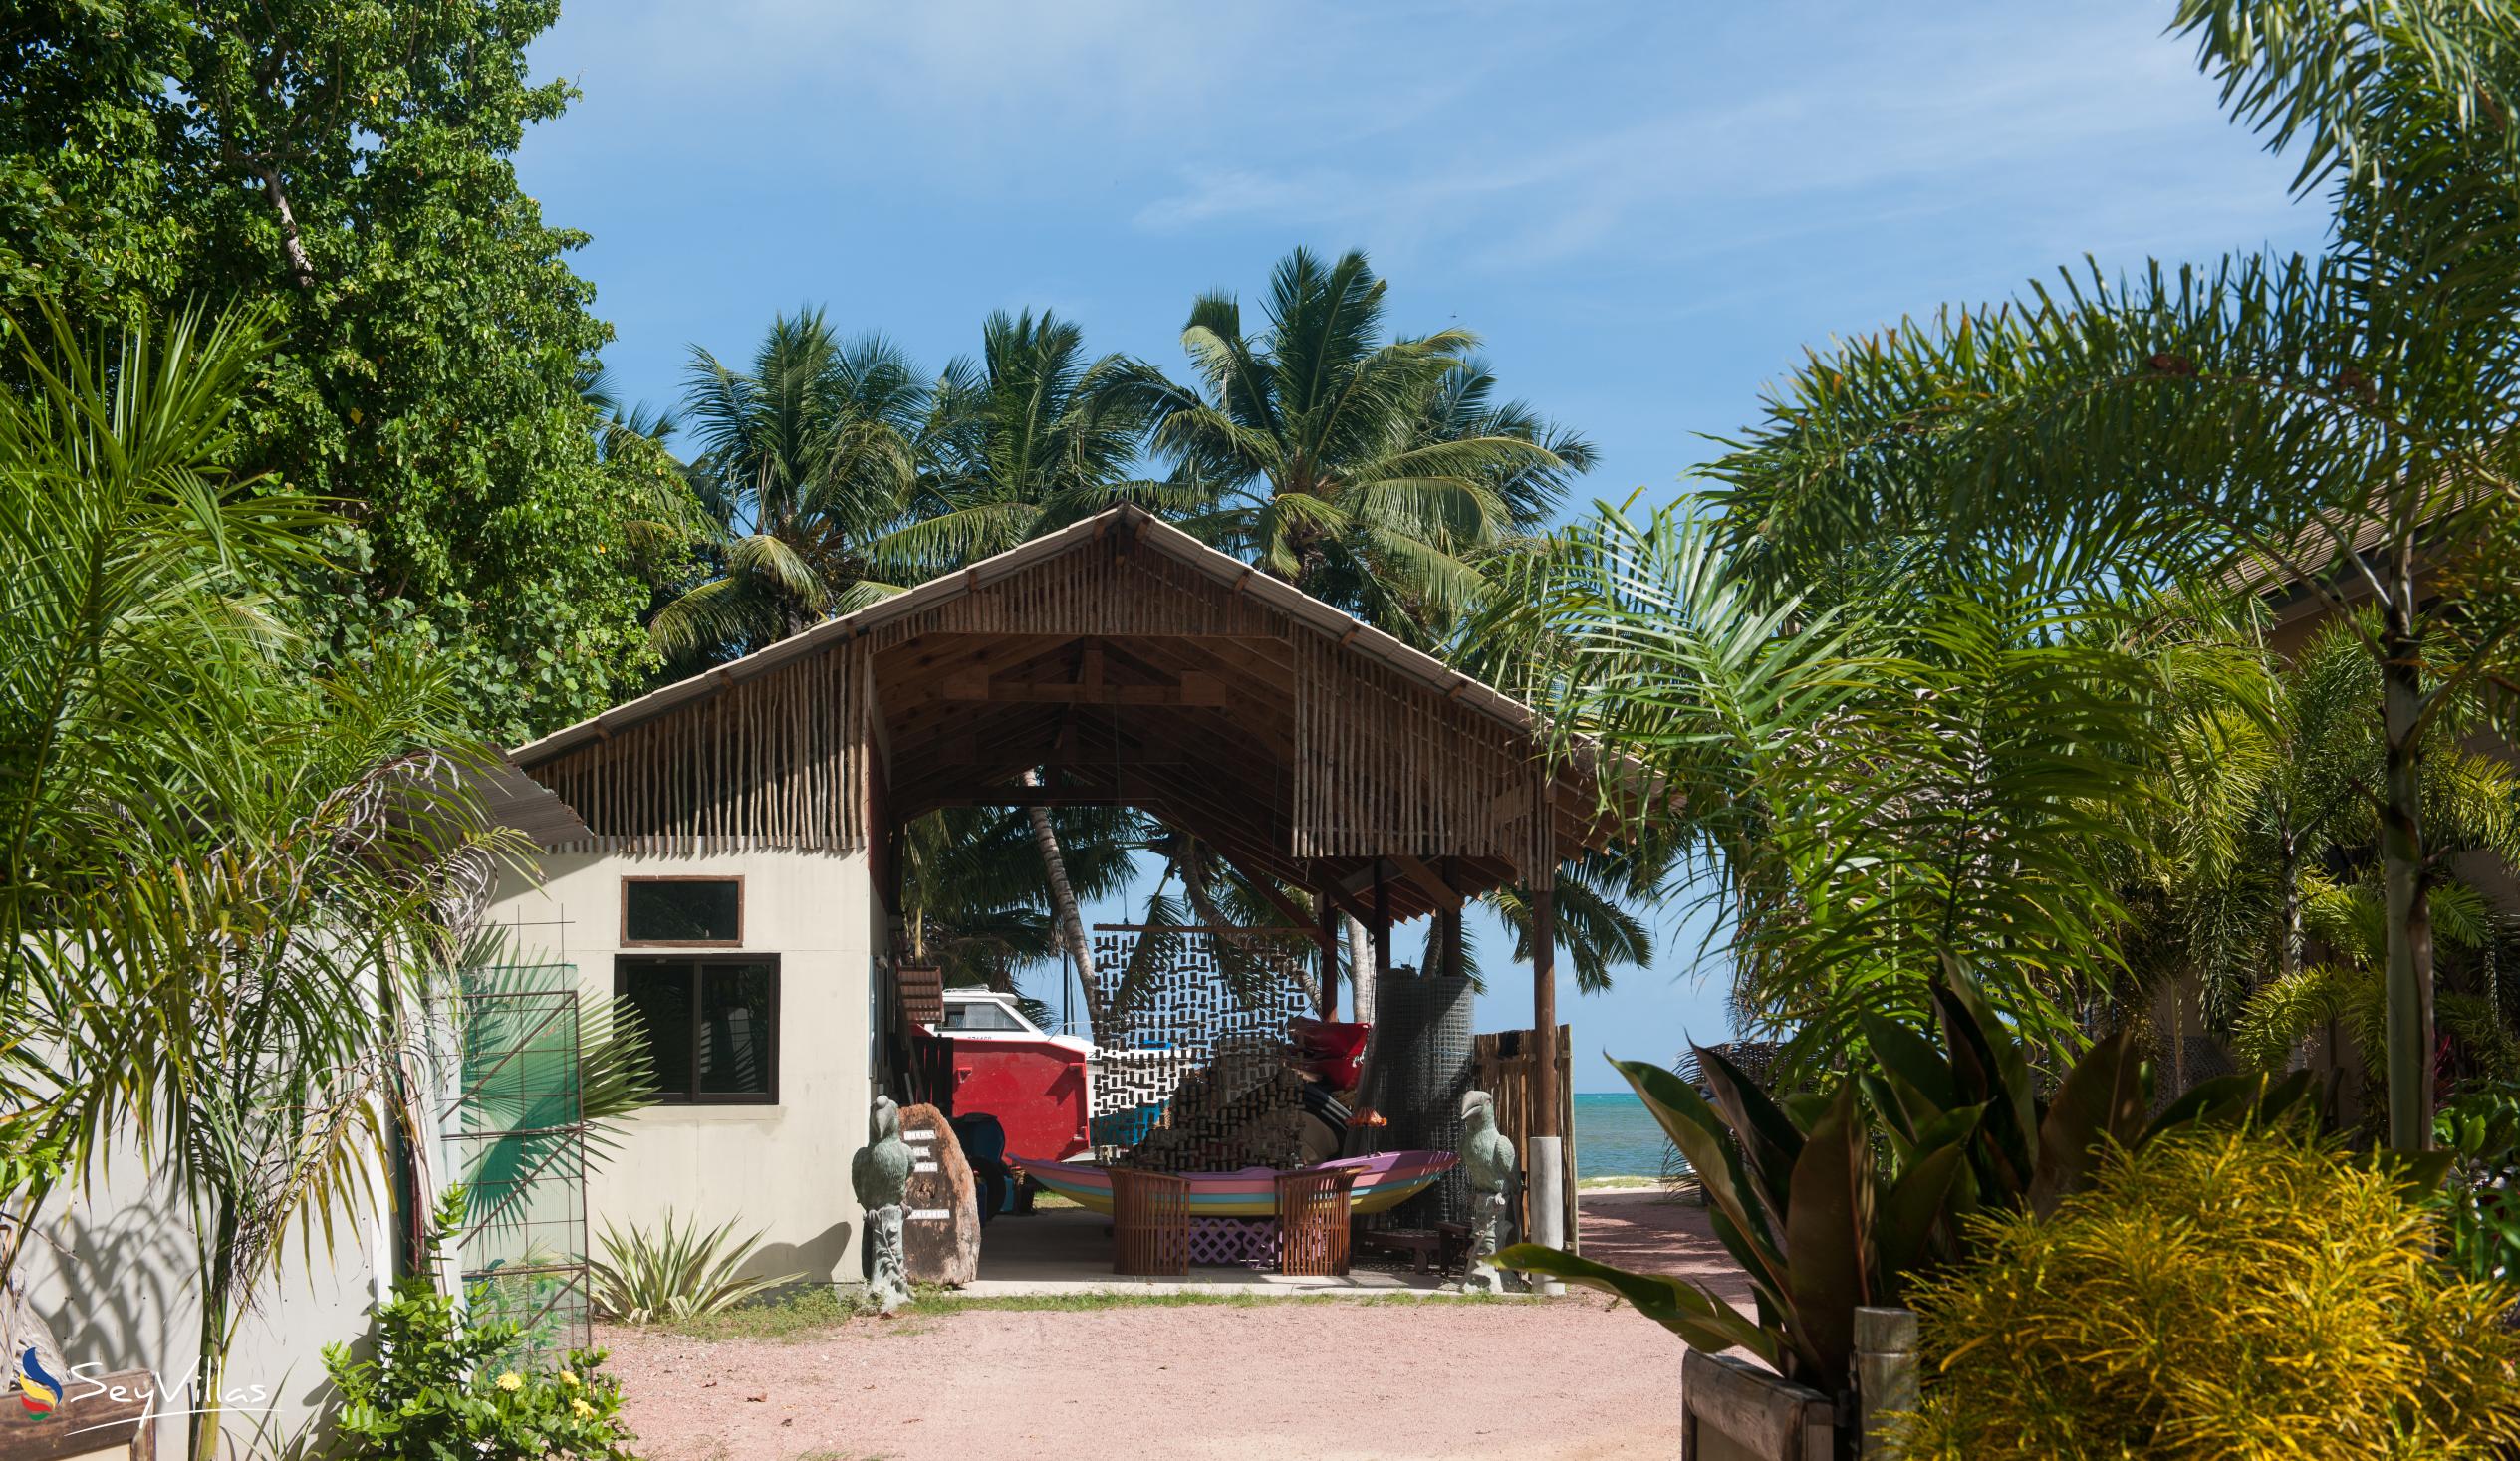 Foto 6: Villas des Alizes - Aussenbereich - Praslin (Seychellen)